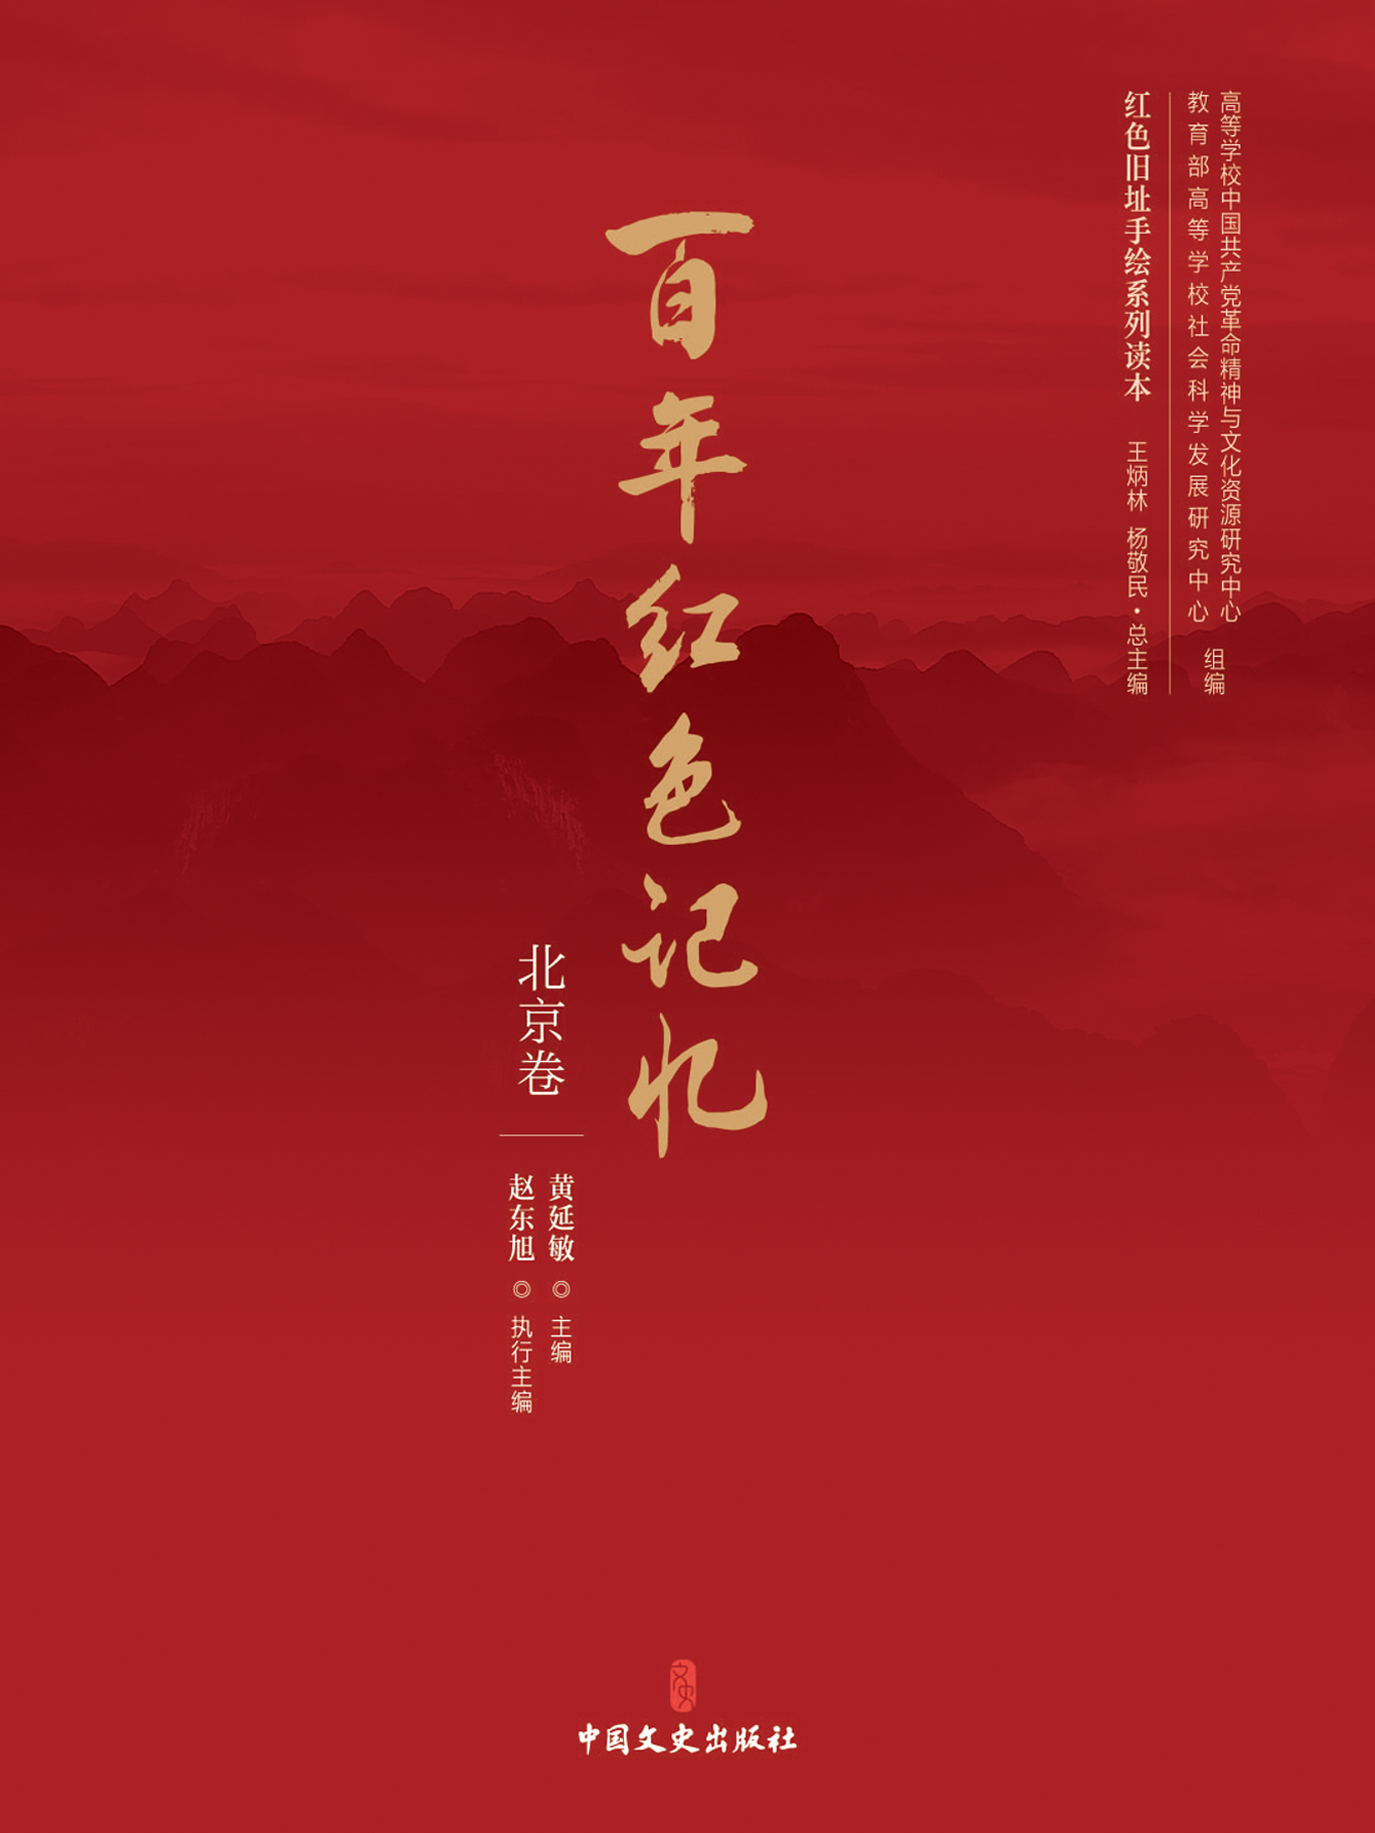 百年红色记忆·北京卷